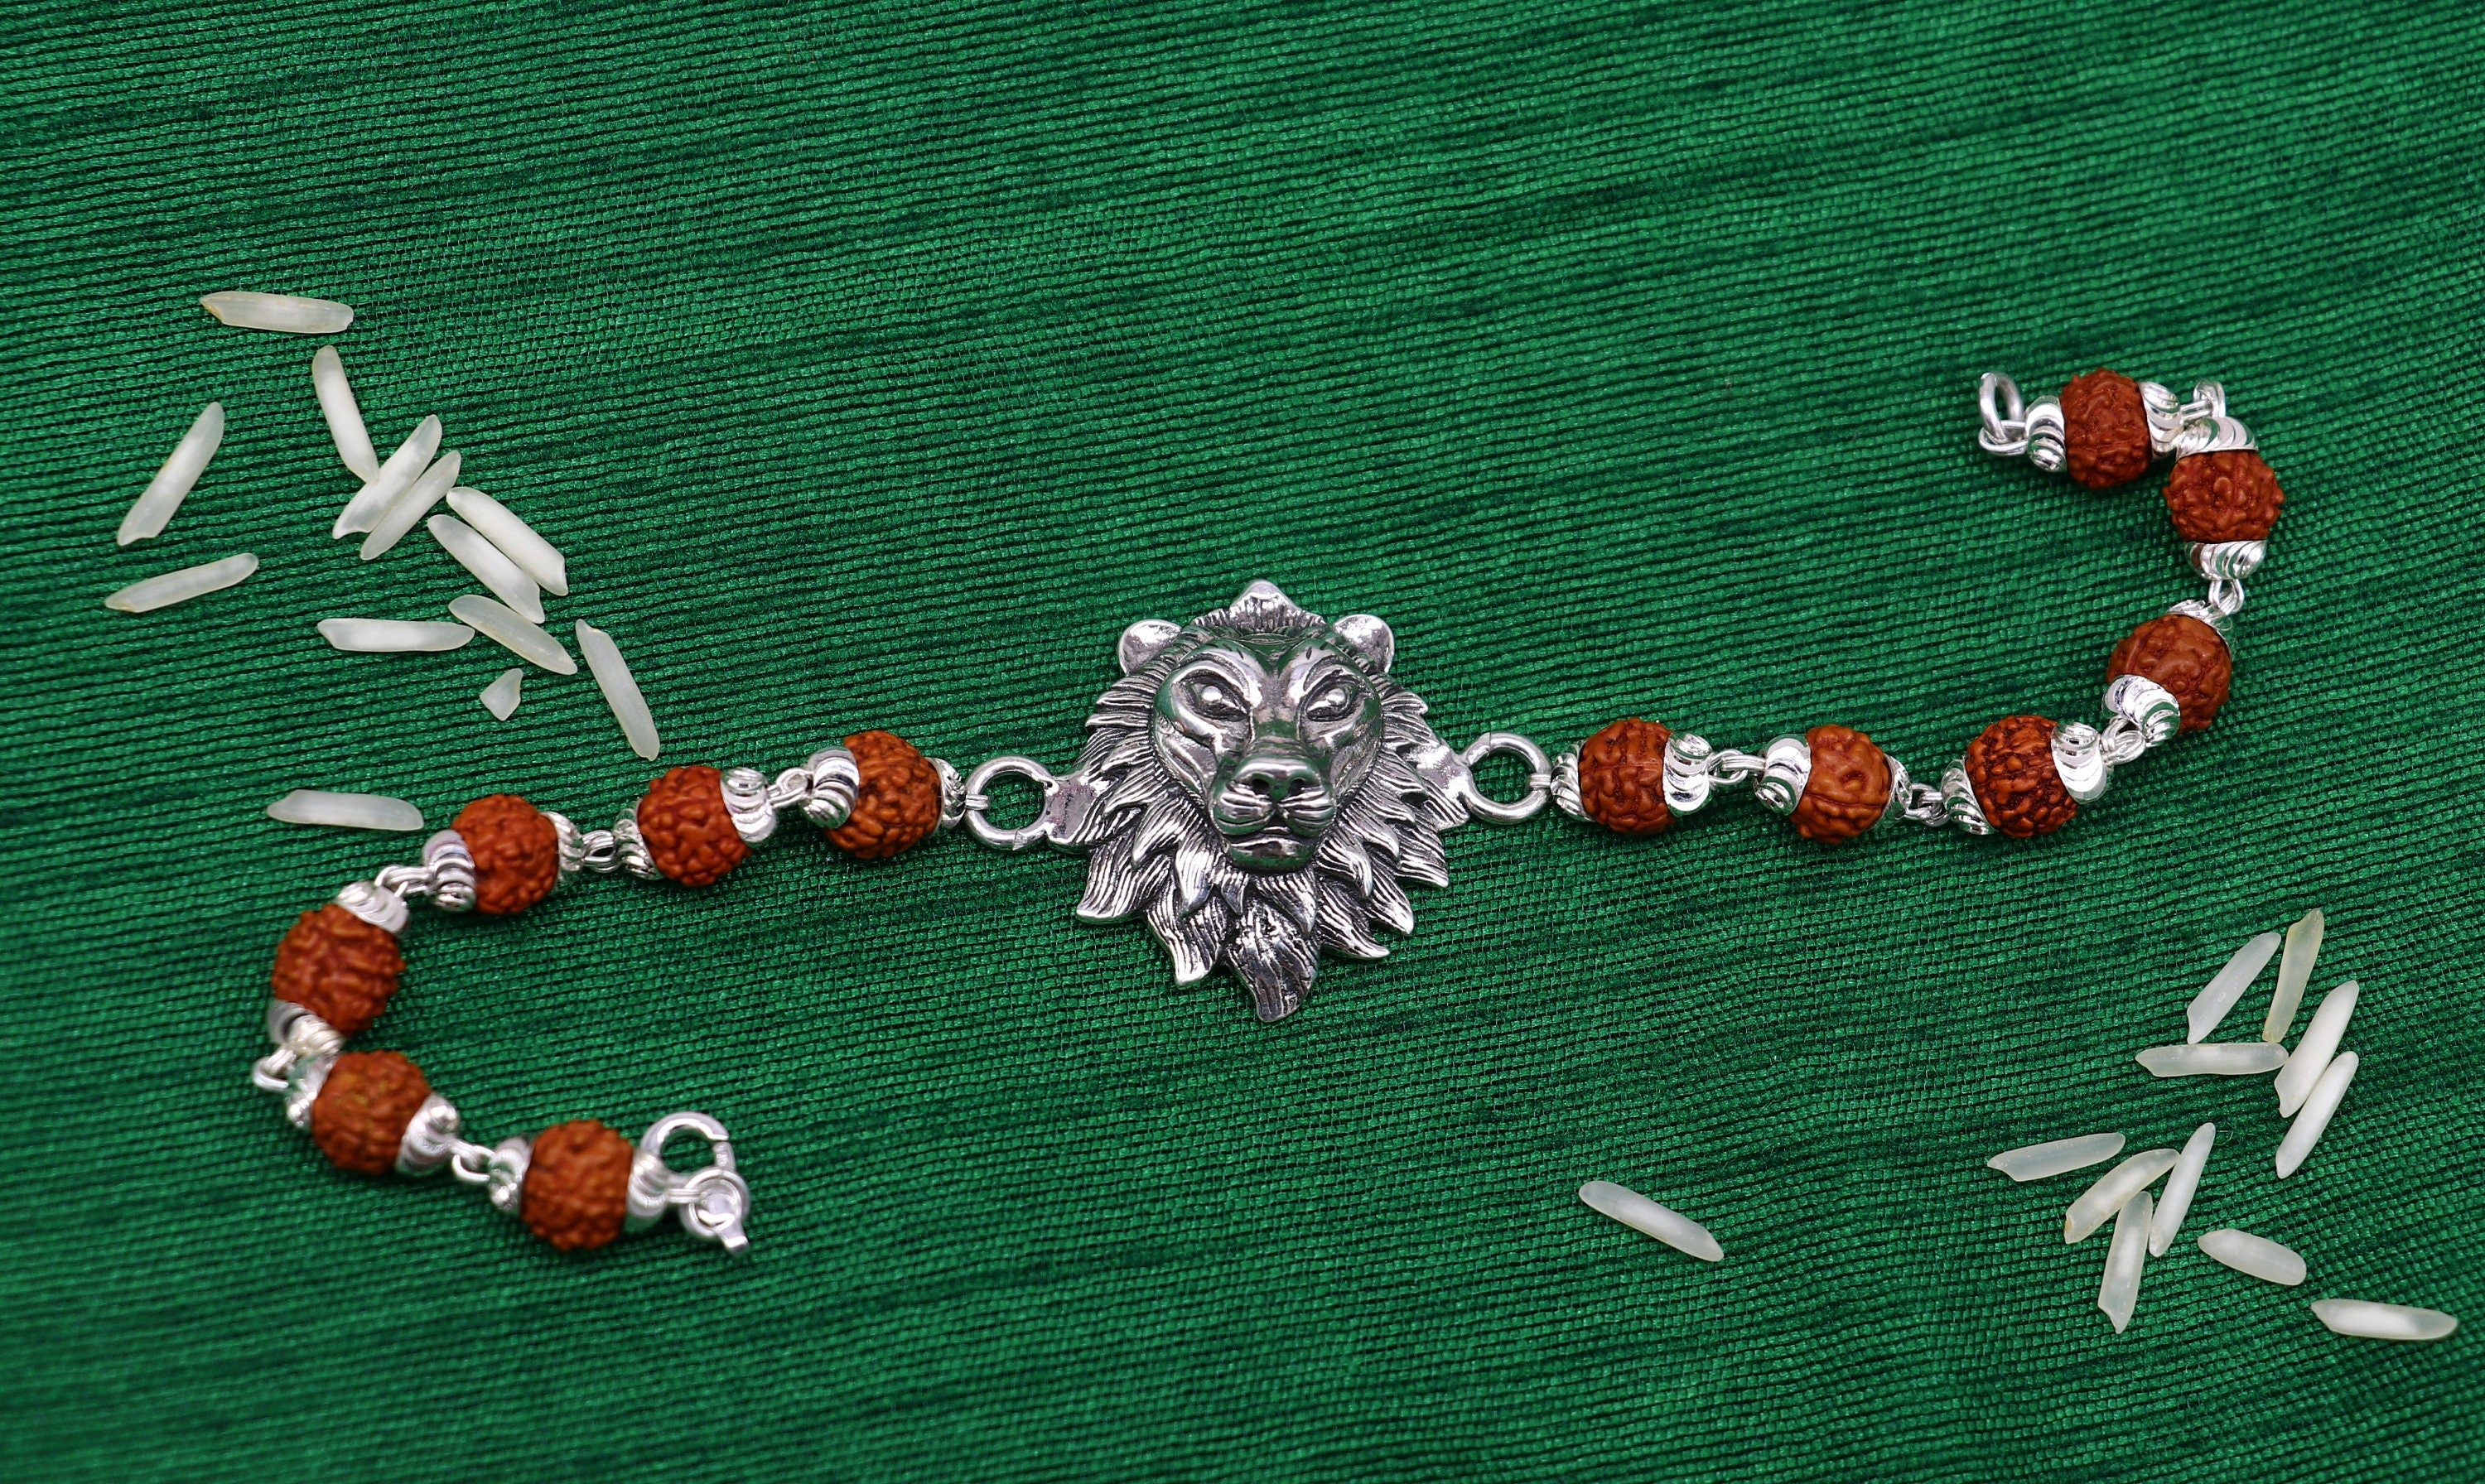 Buy Customized Name Bracelet With Rudraksha Beads Best Gift At MewadArts